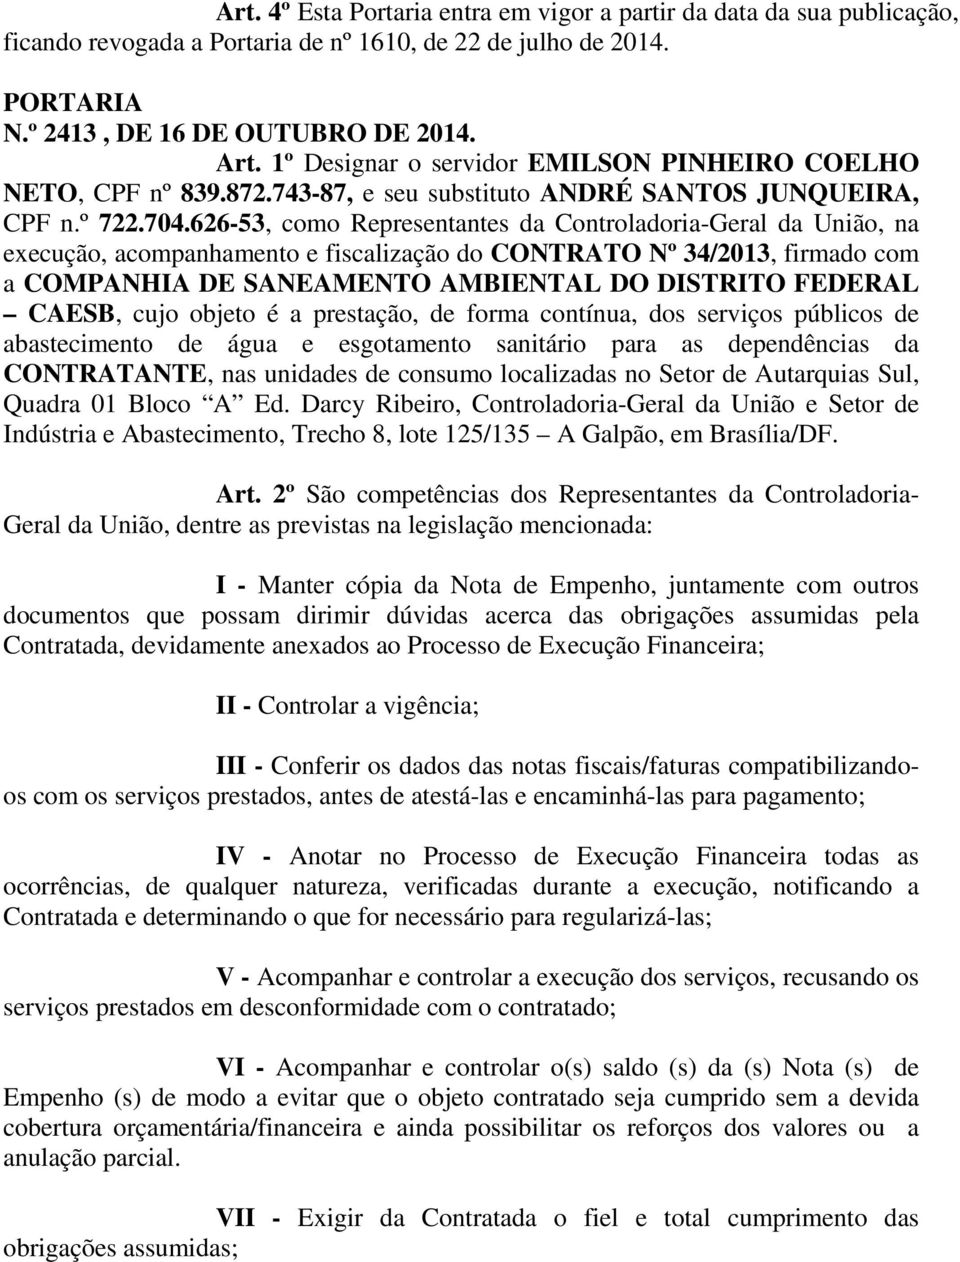 626-53, como Representantes da Controladoria-Geral da União, na execução, acompanhamento e fiscalização do CONTRATO Nº 34/2013, firmado com a COMPANHIA DE SANEAMENTO AMBIENTAL DO DISTRITO FEDERAL